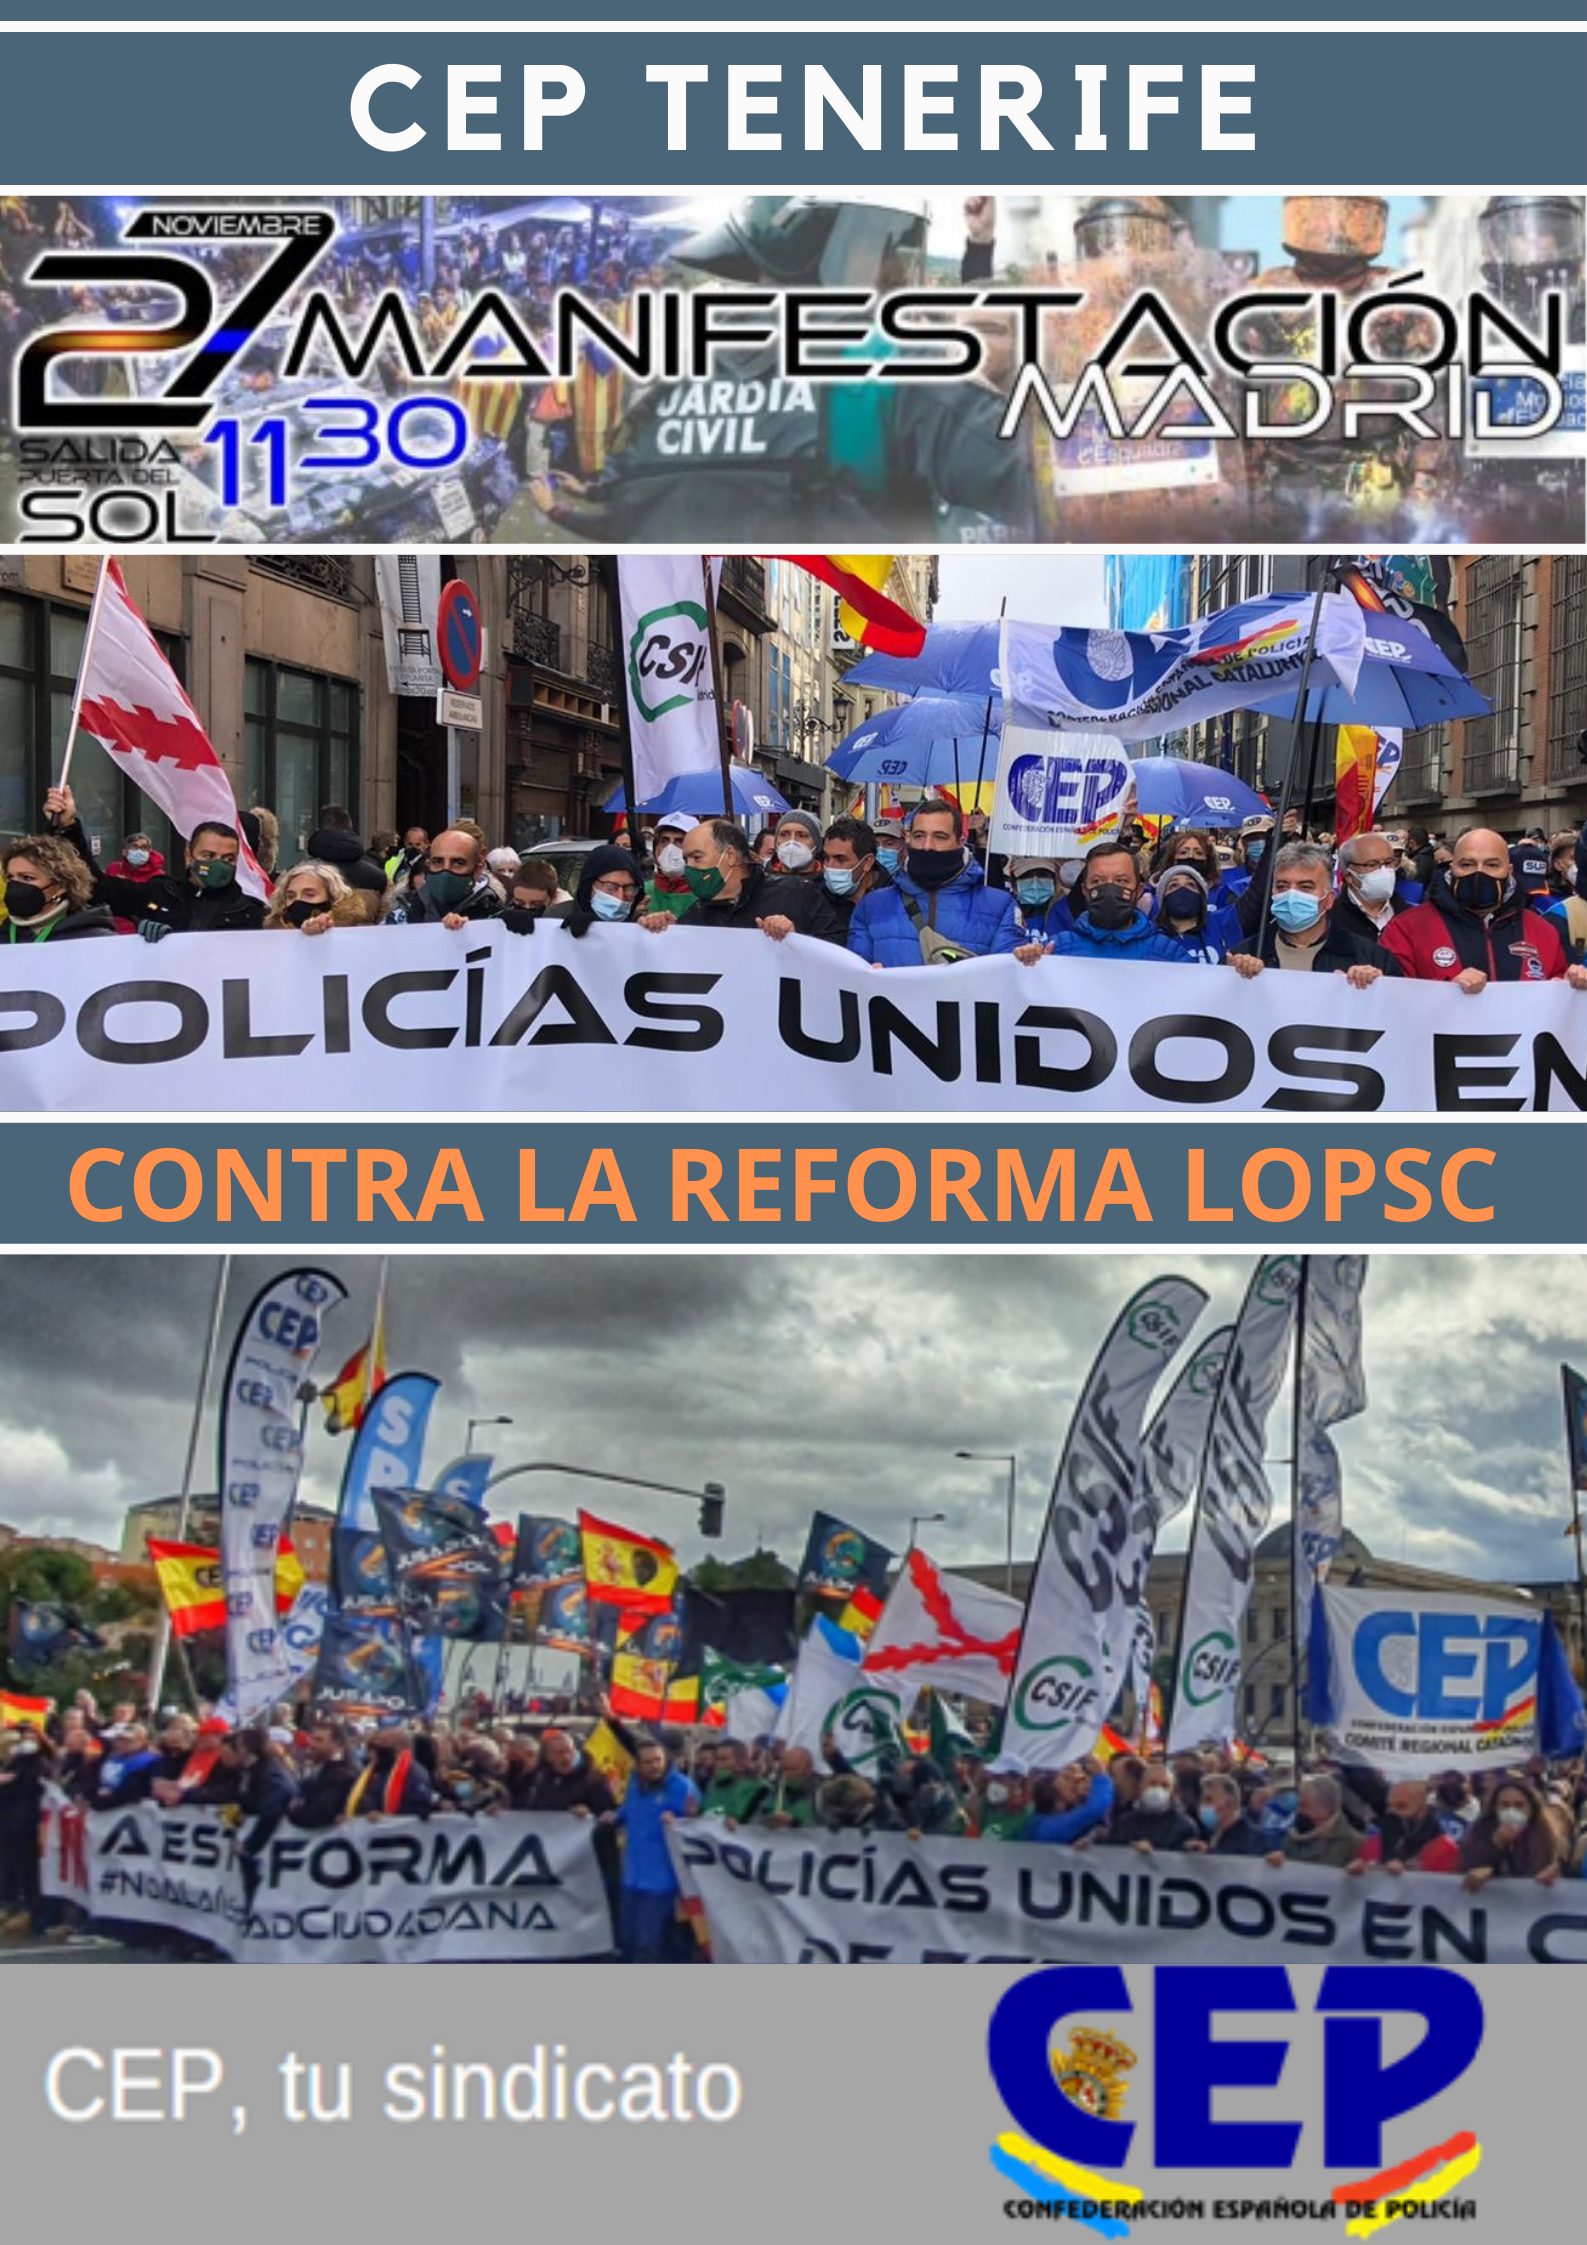 Gracias a los que nos han apoyado en manifestación del sábado 27 noviembre en Madrid contra reforma LOPSC